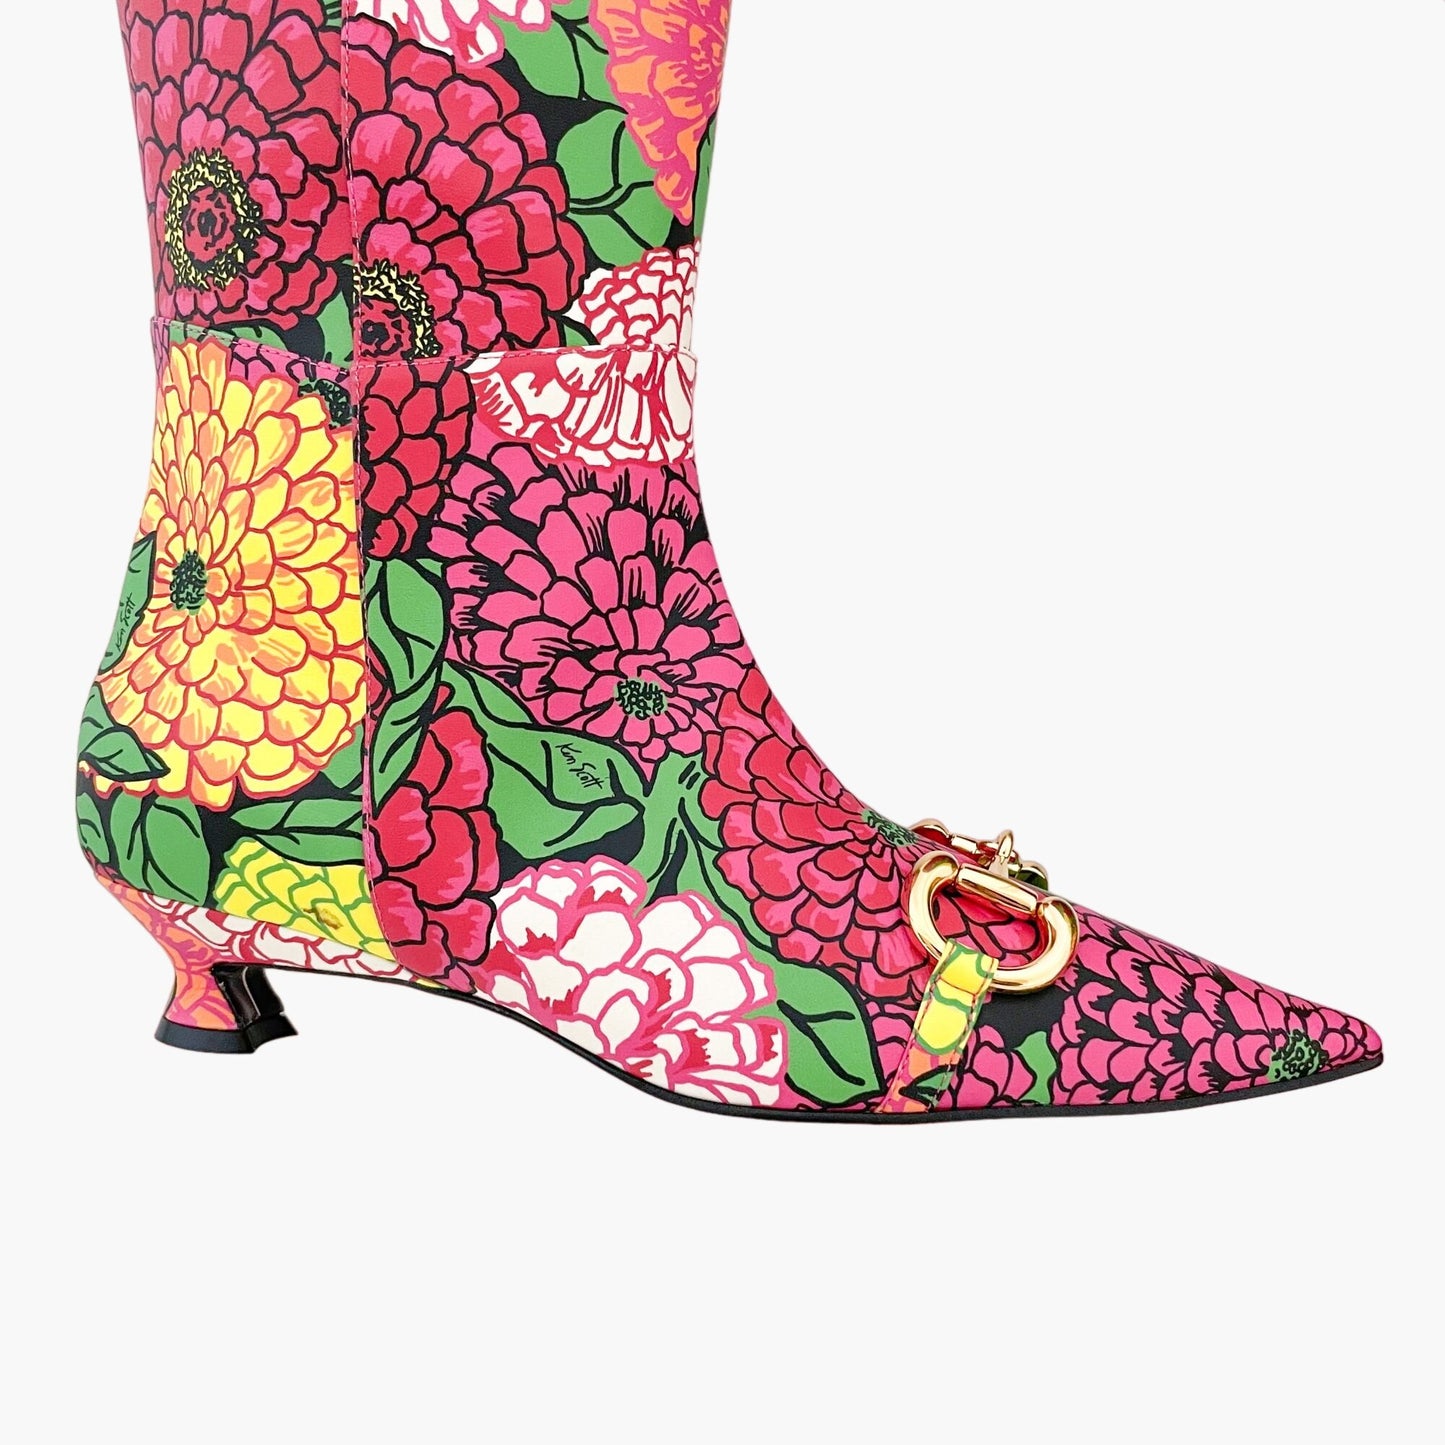 Gucci Ken Scott Horsebit Knee High Boots in Infinity Pomponica Size 36.5